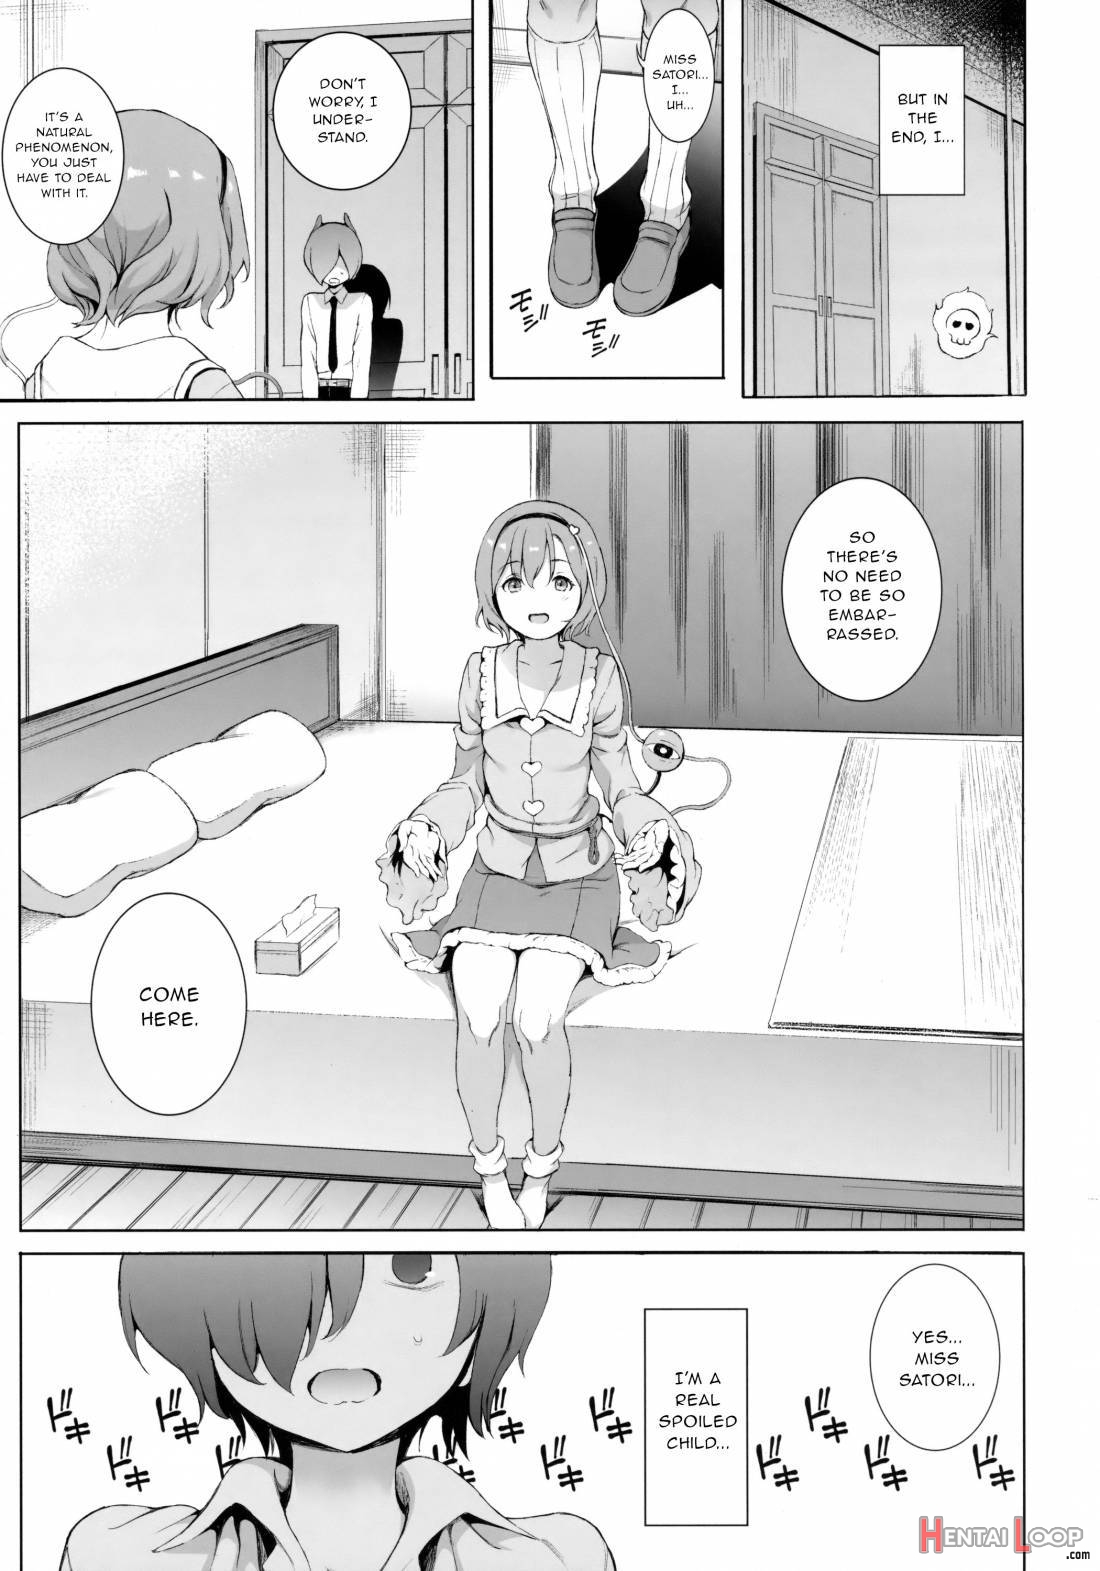 Satori-sama Generation page 4